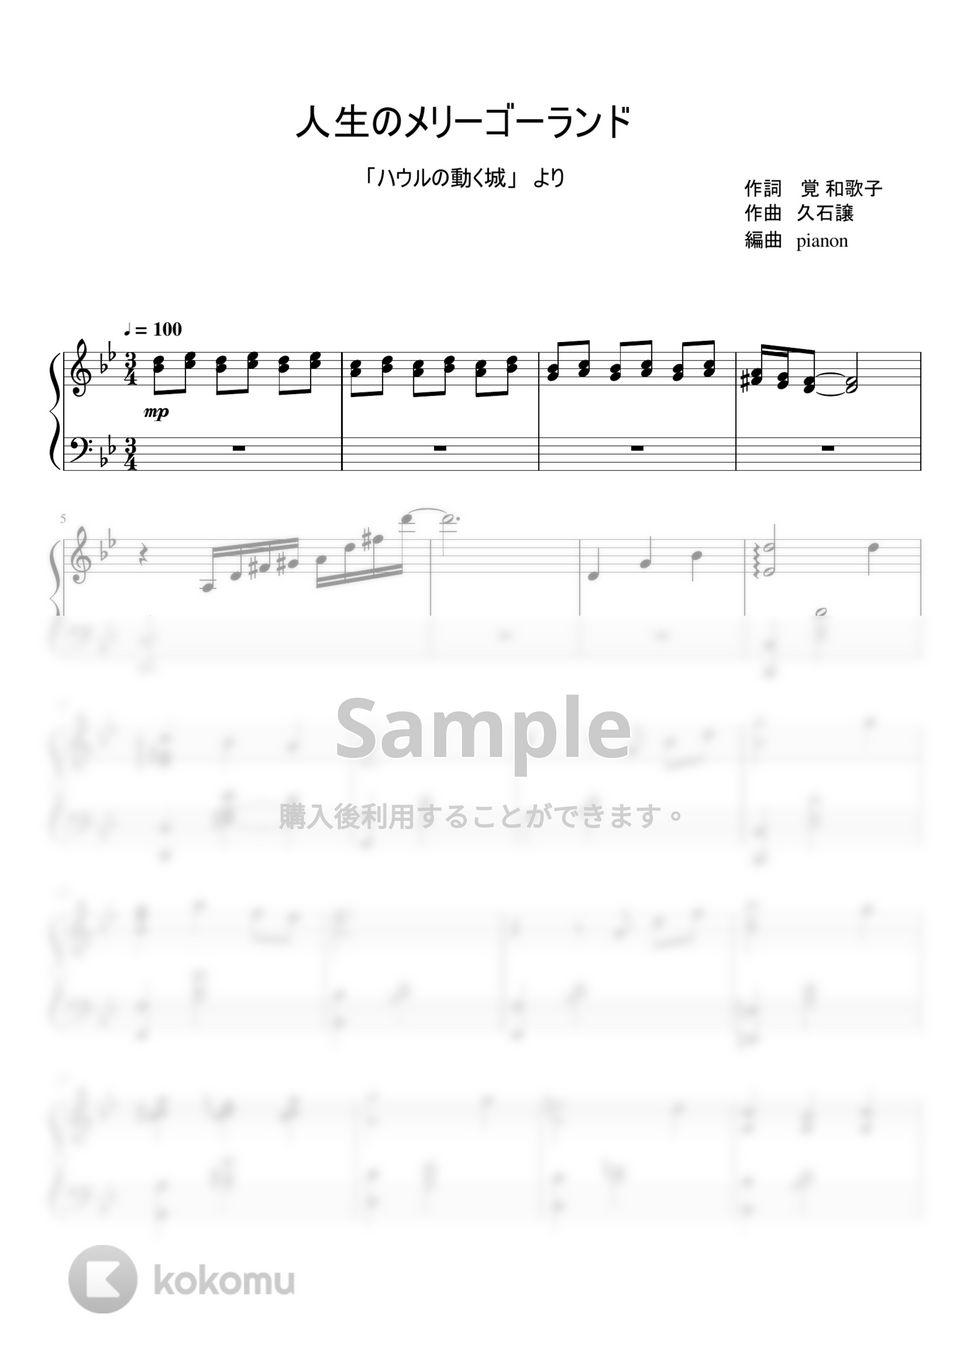 久石譲 - 人生のメリーゴーランド (ピアノソロ / ピアノ上級) by pianon